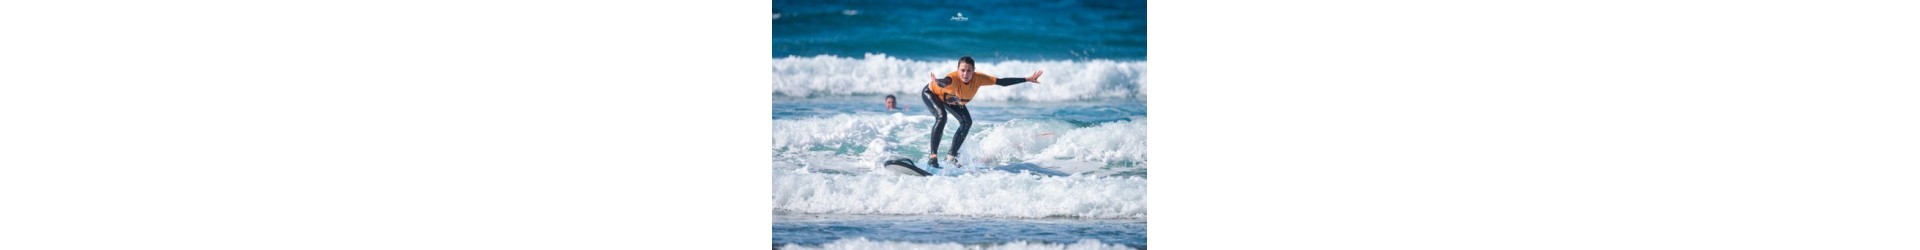 Surfen: perfekte Wellen, warmes Wasser und wunderschöne Strände.